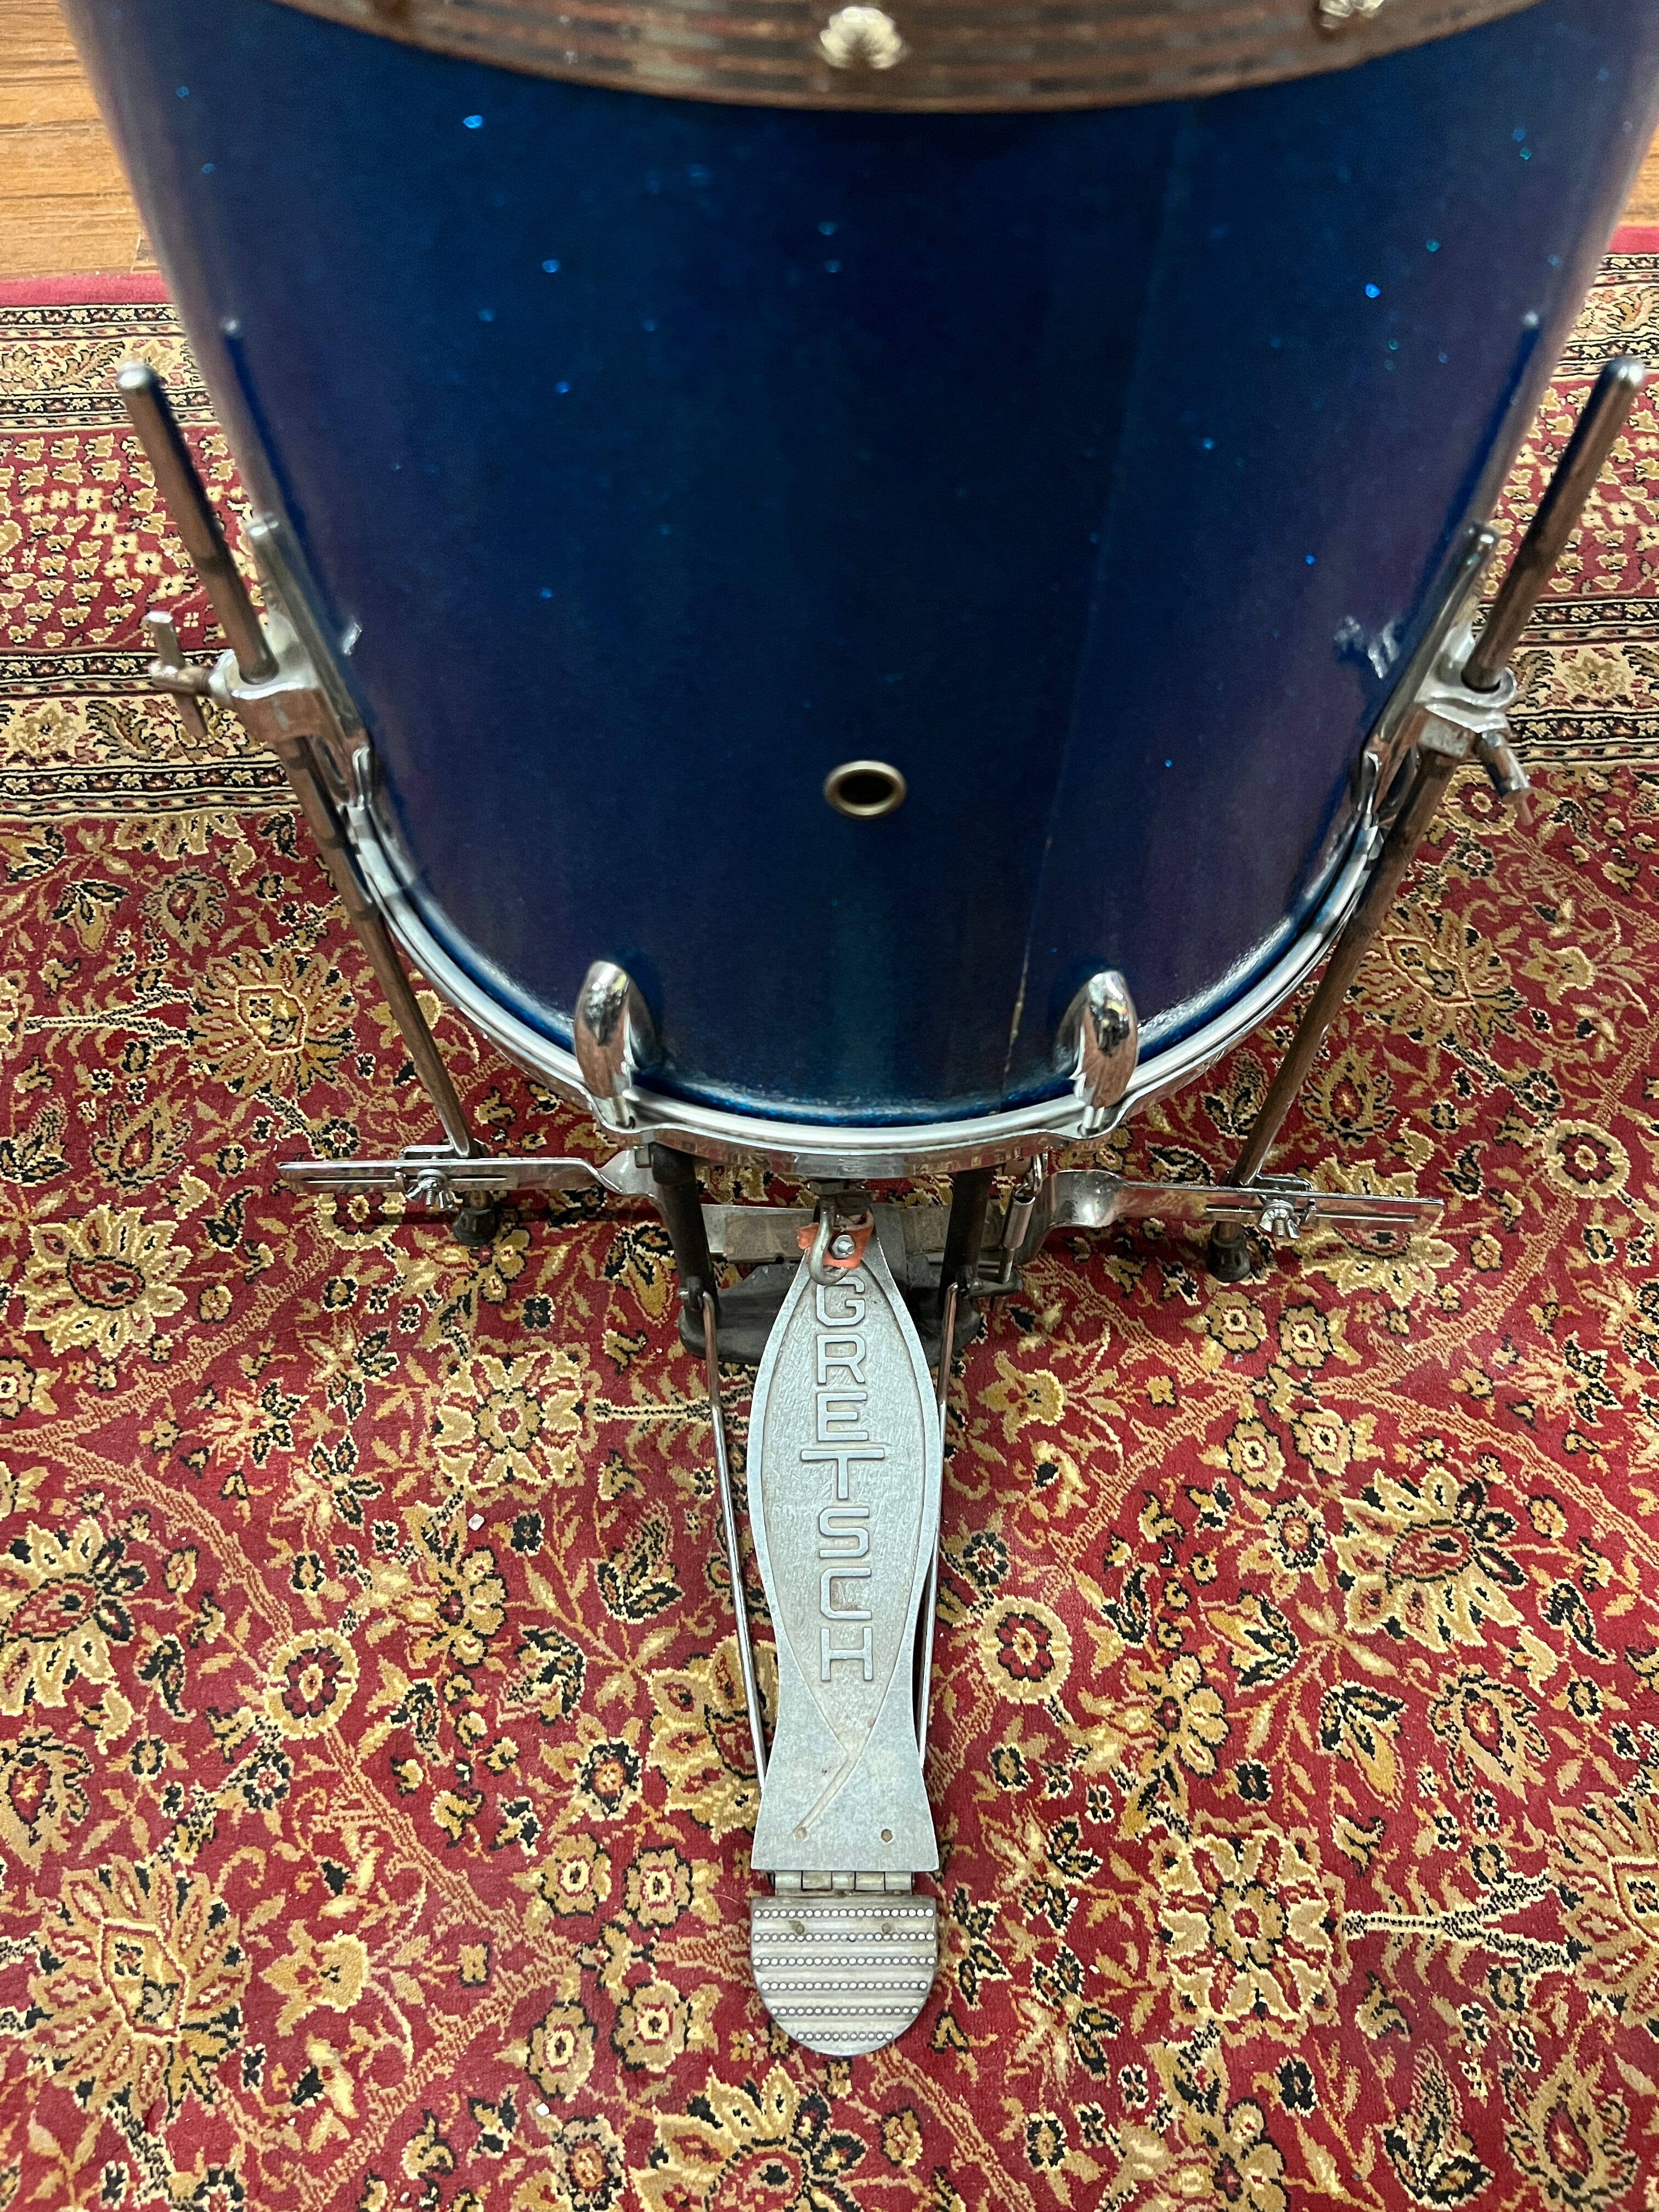 Gretsch Cocktail Drum Set 1960s Blue (PX4183) drum kit Gretsch 